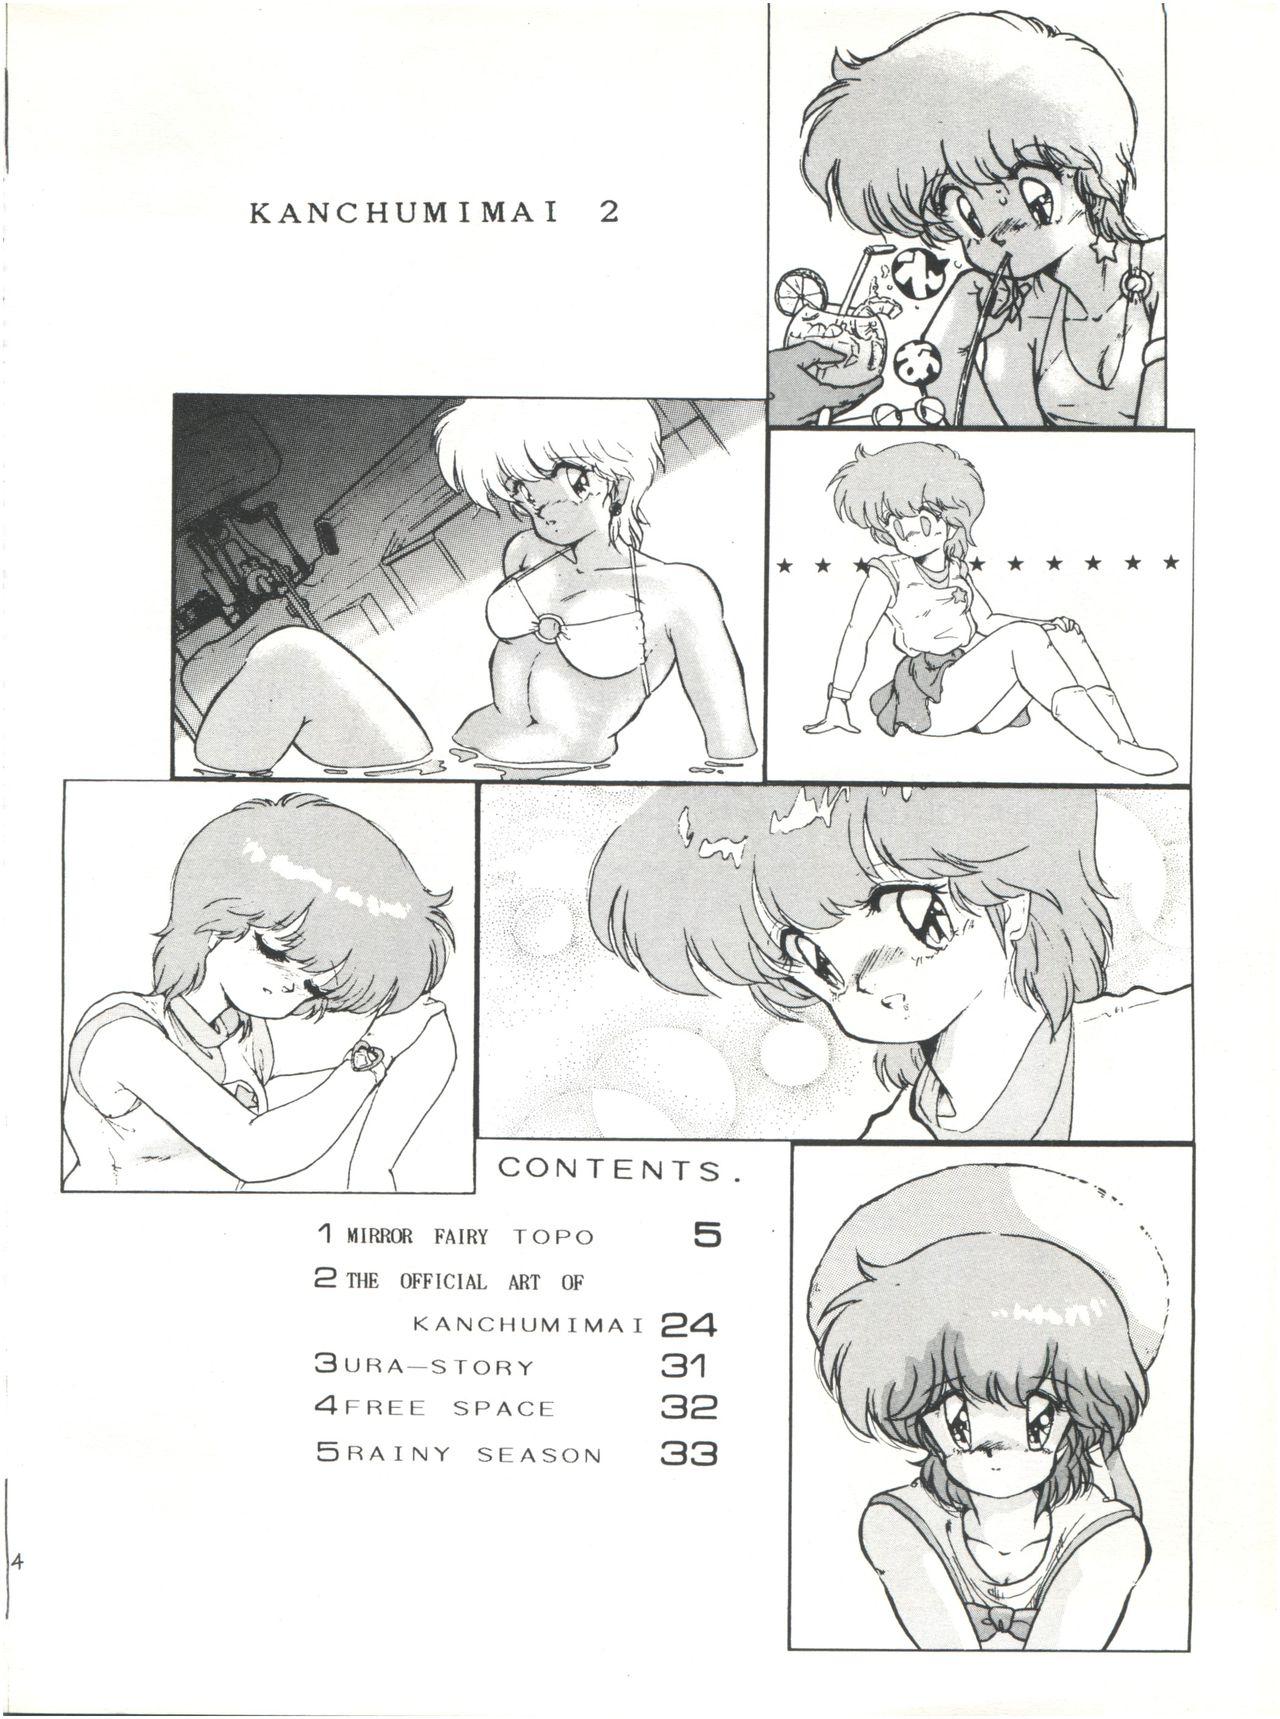 Hot Women Fucking Meta-All‐Extra Kanchumimai vol.2 - Magical emi Furry - Page 3